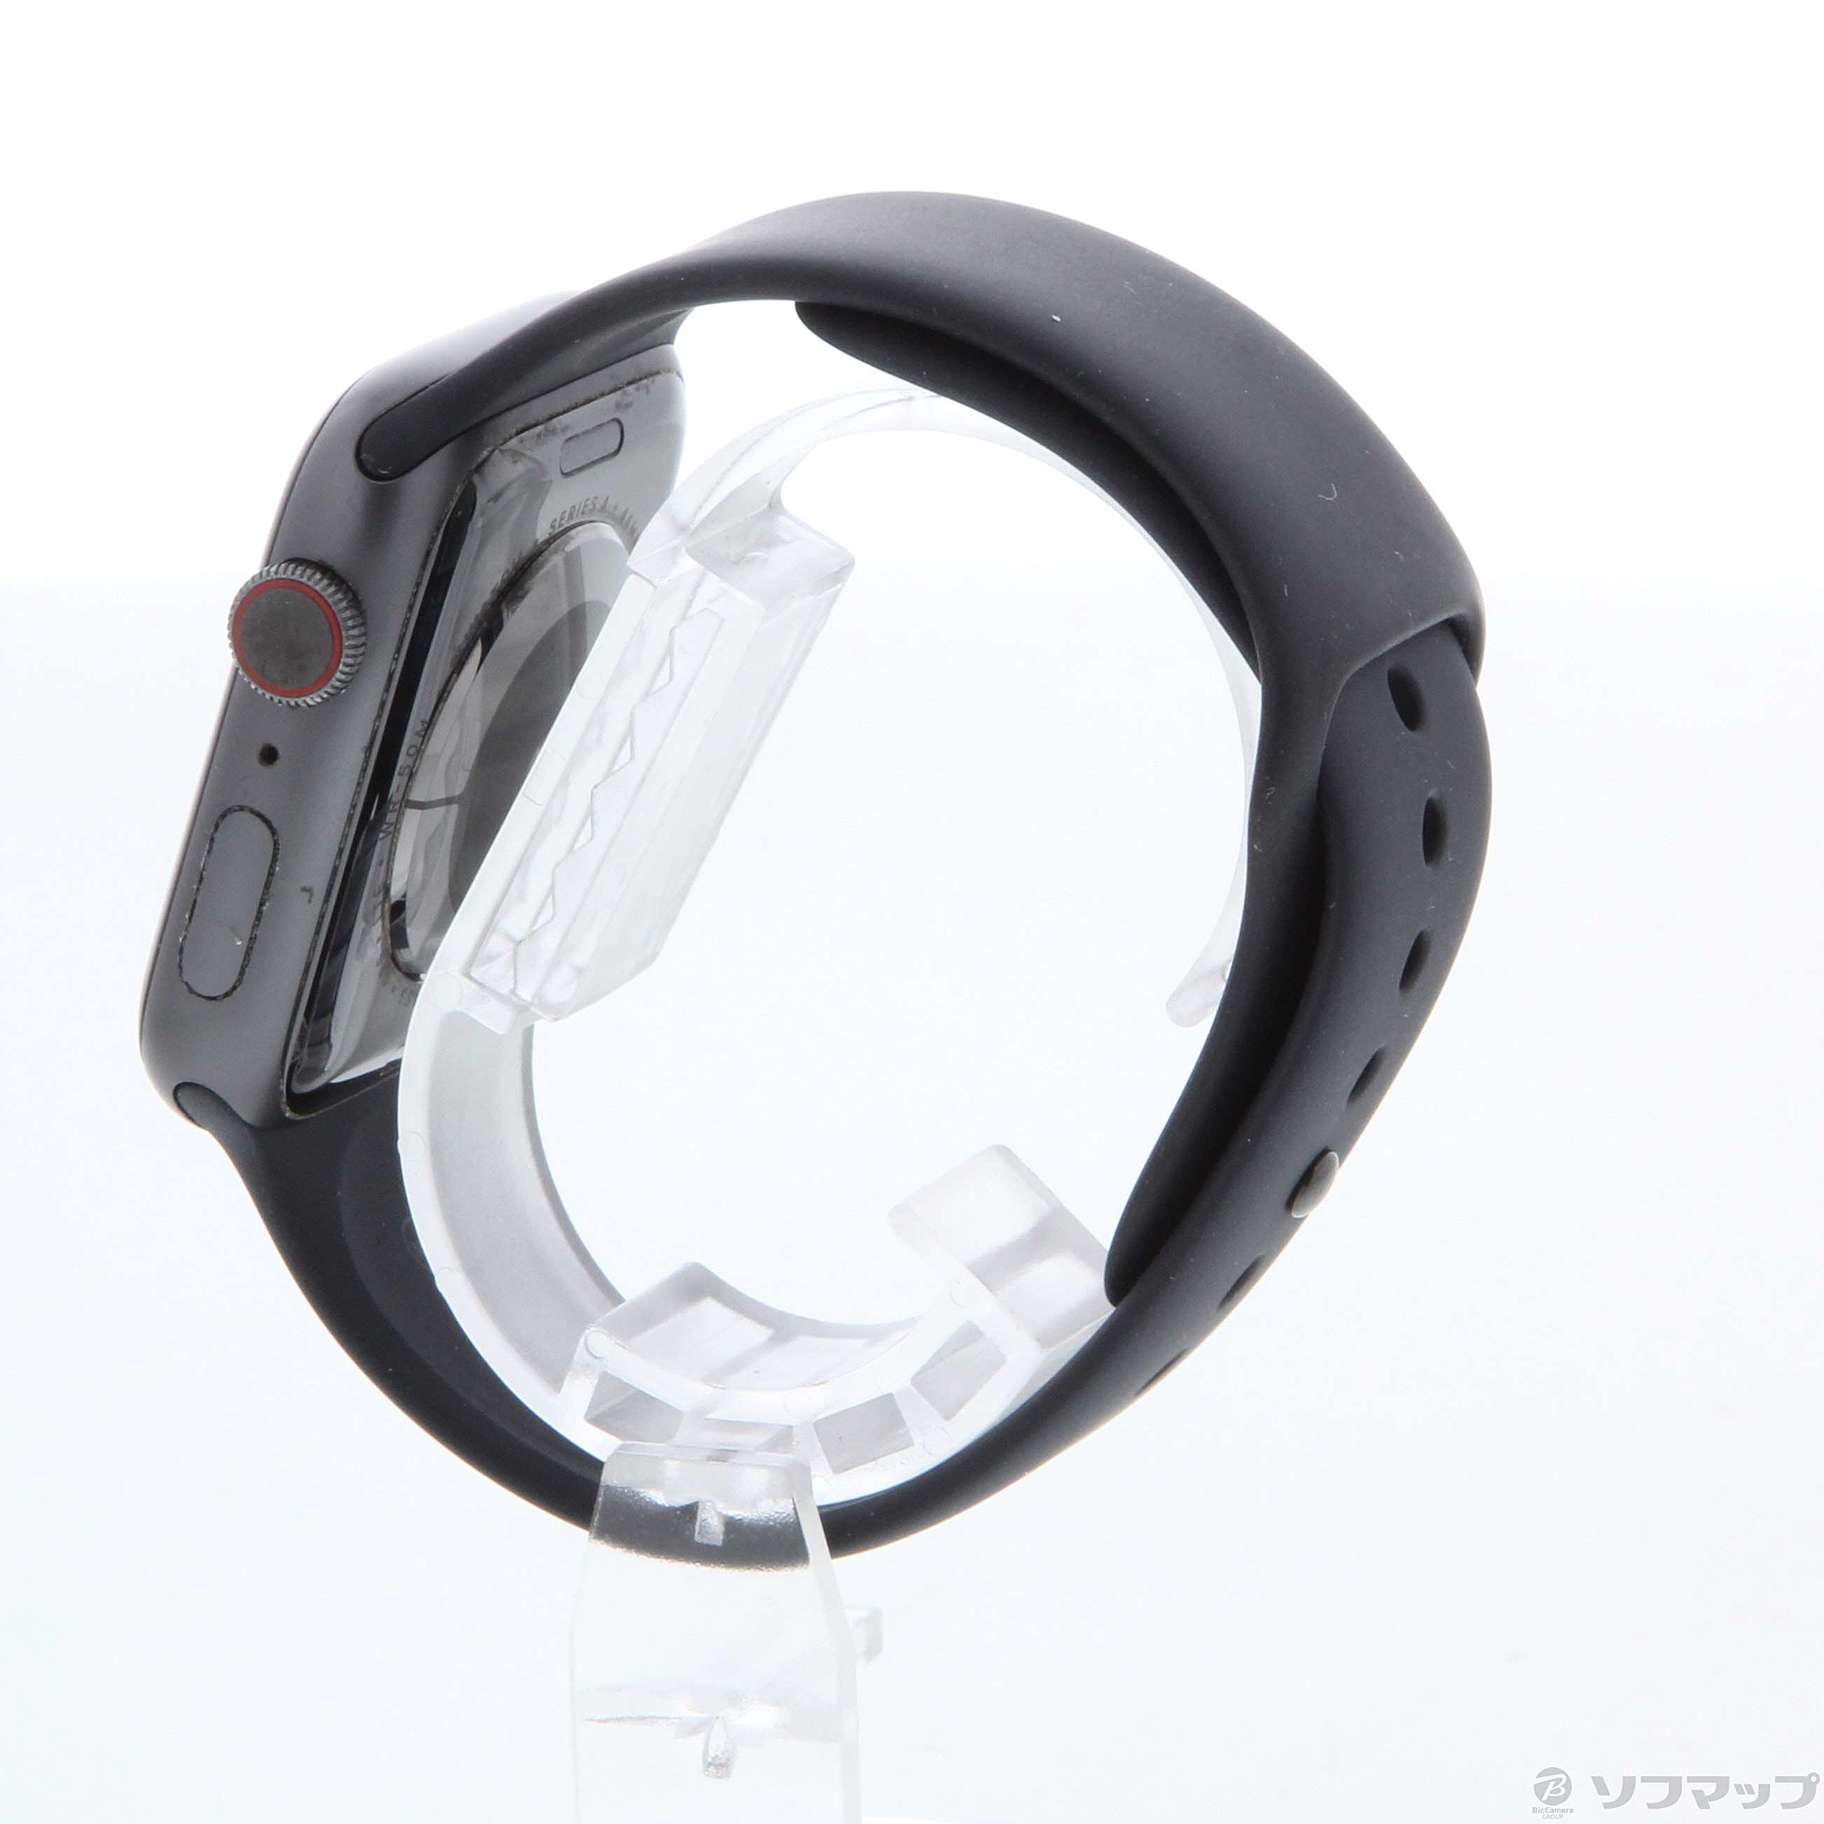 〔中古品〕 Apple Watch Series 4 GPS + Cellular 44mm スペースグレイアルミニウムケース ブラックスポーツバンド